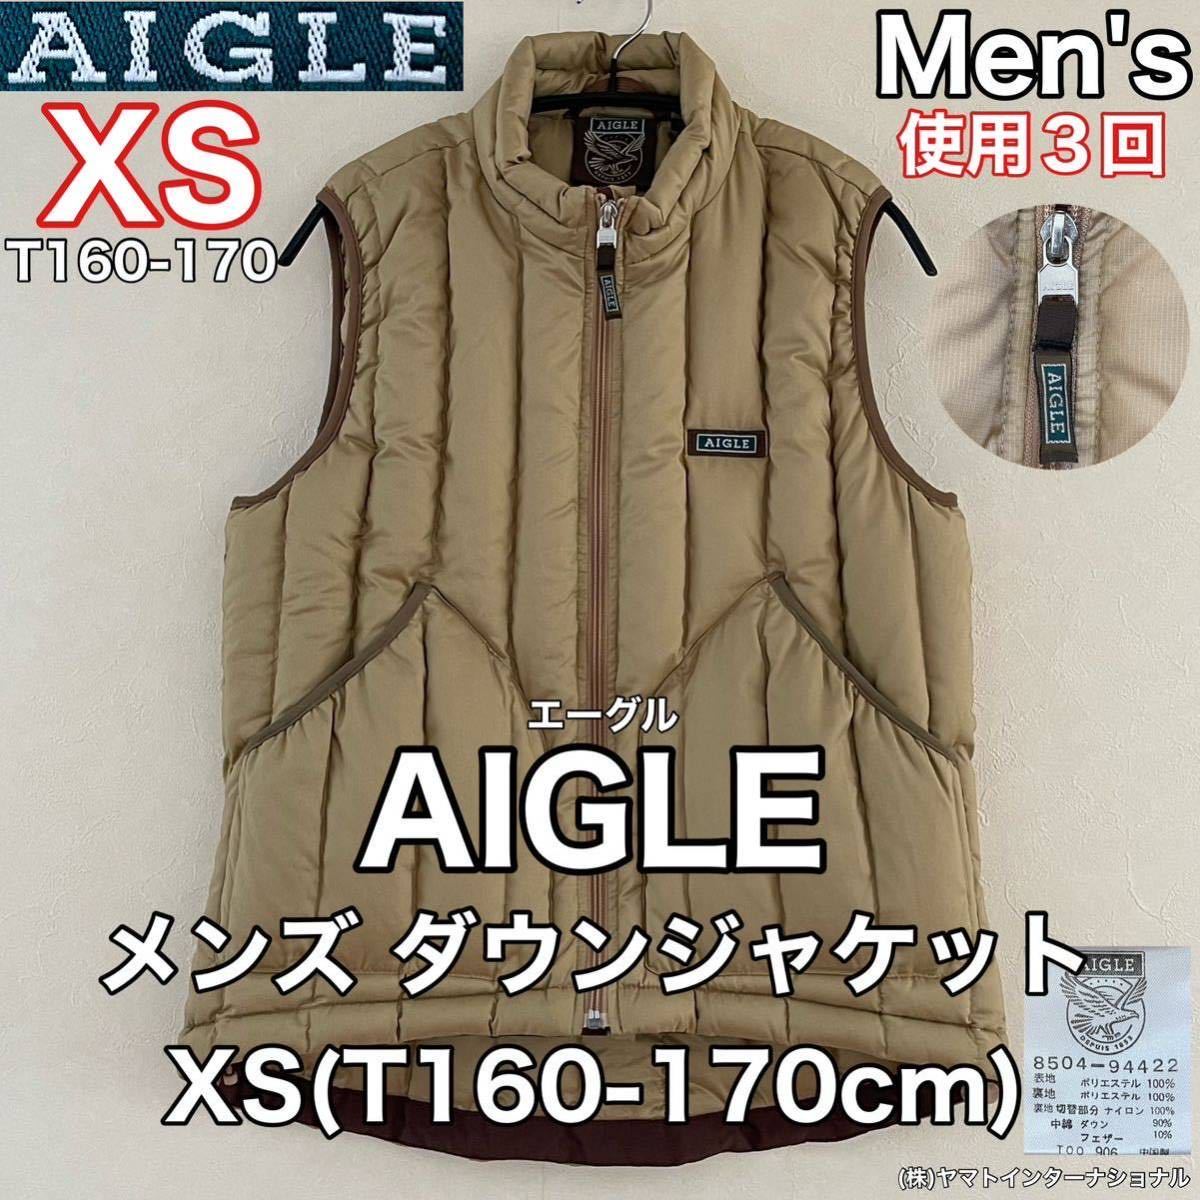 超美品 AIGLE(エーグル)メンズ ダウン ジャケット XS(T160-170cm)ベスト 使用3回 アウトドア スポーツ 防風 ヤマトインターナショナル(株)